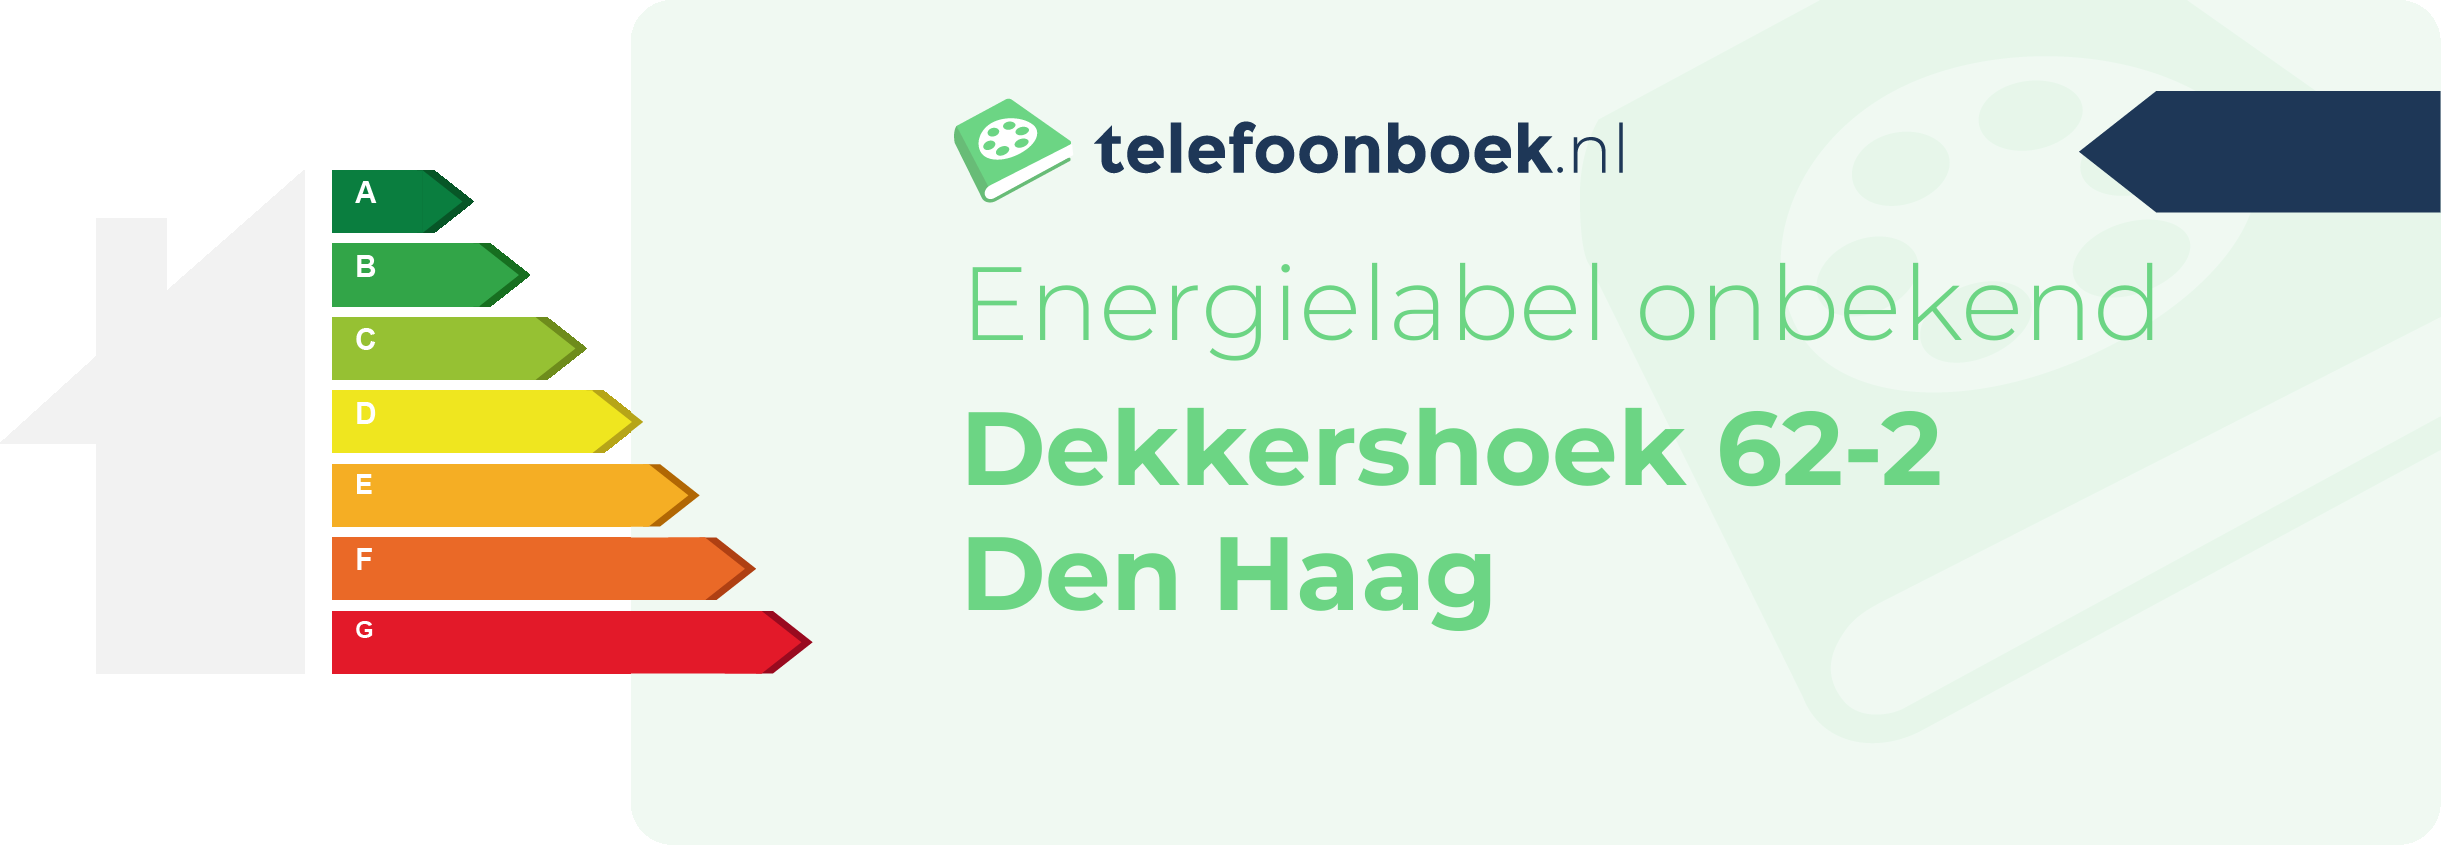 Energielabel Dekkershoek 62-2 Den Haag